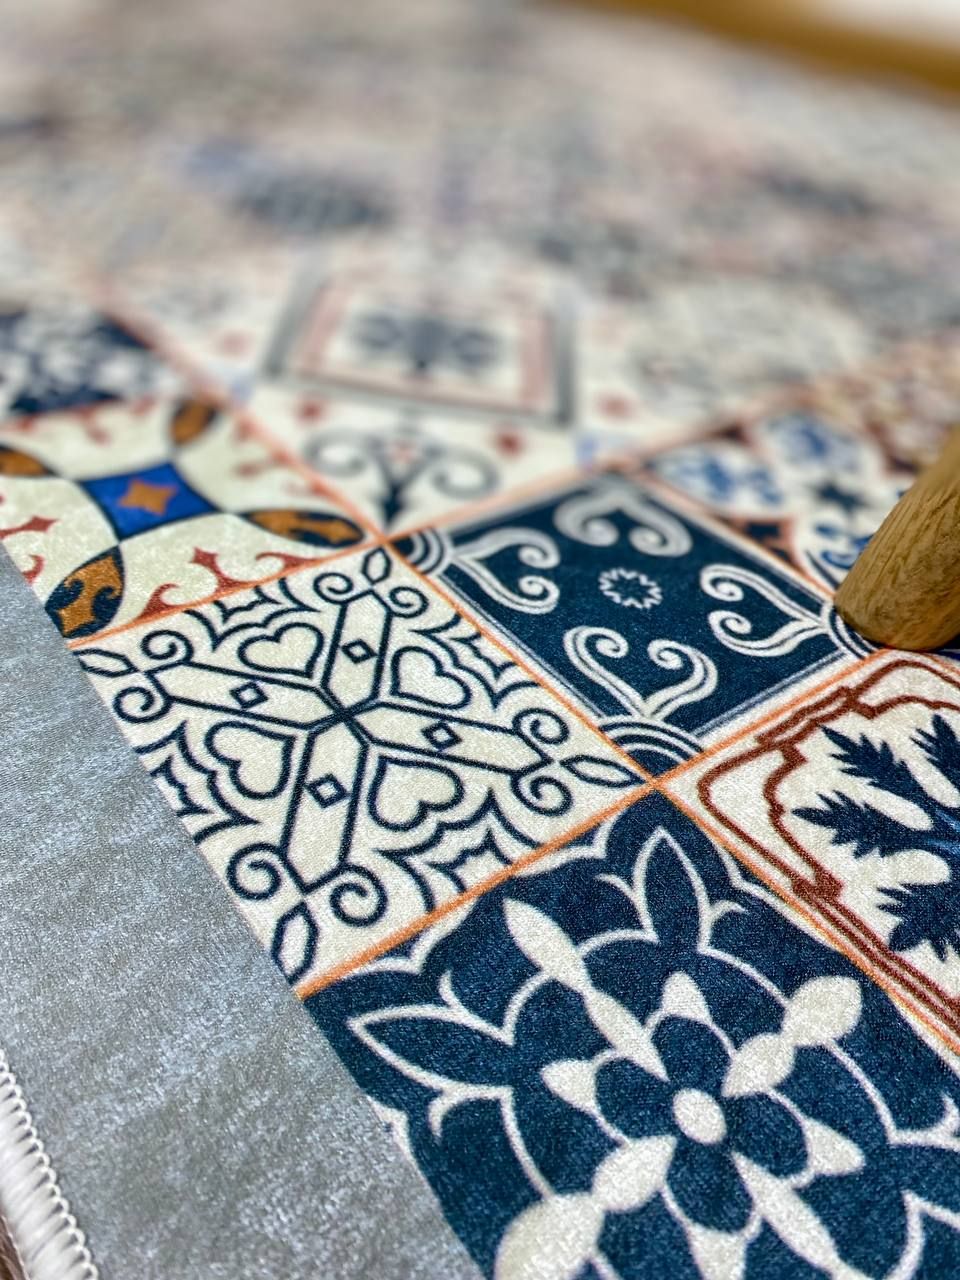 Турецкий безворсовый ковер "Турецкая Мозаика" на подкладке из эко-кожи